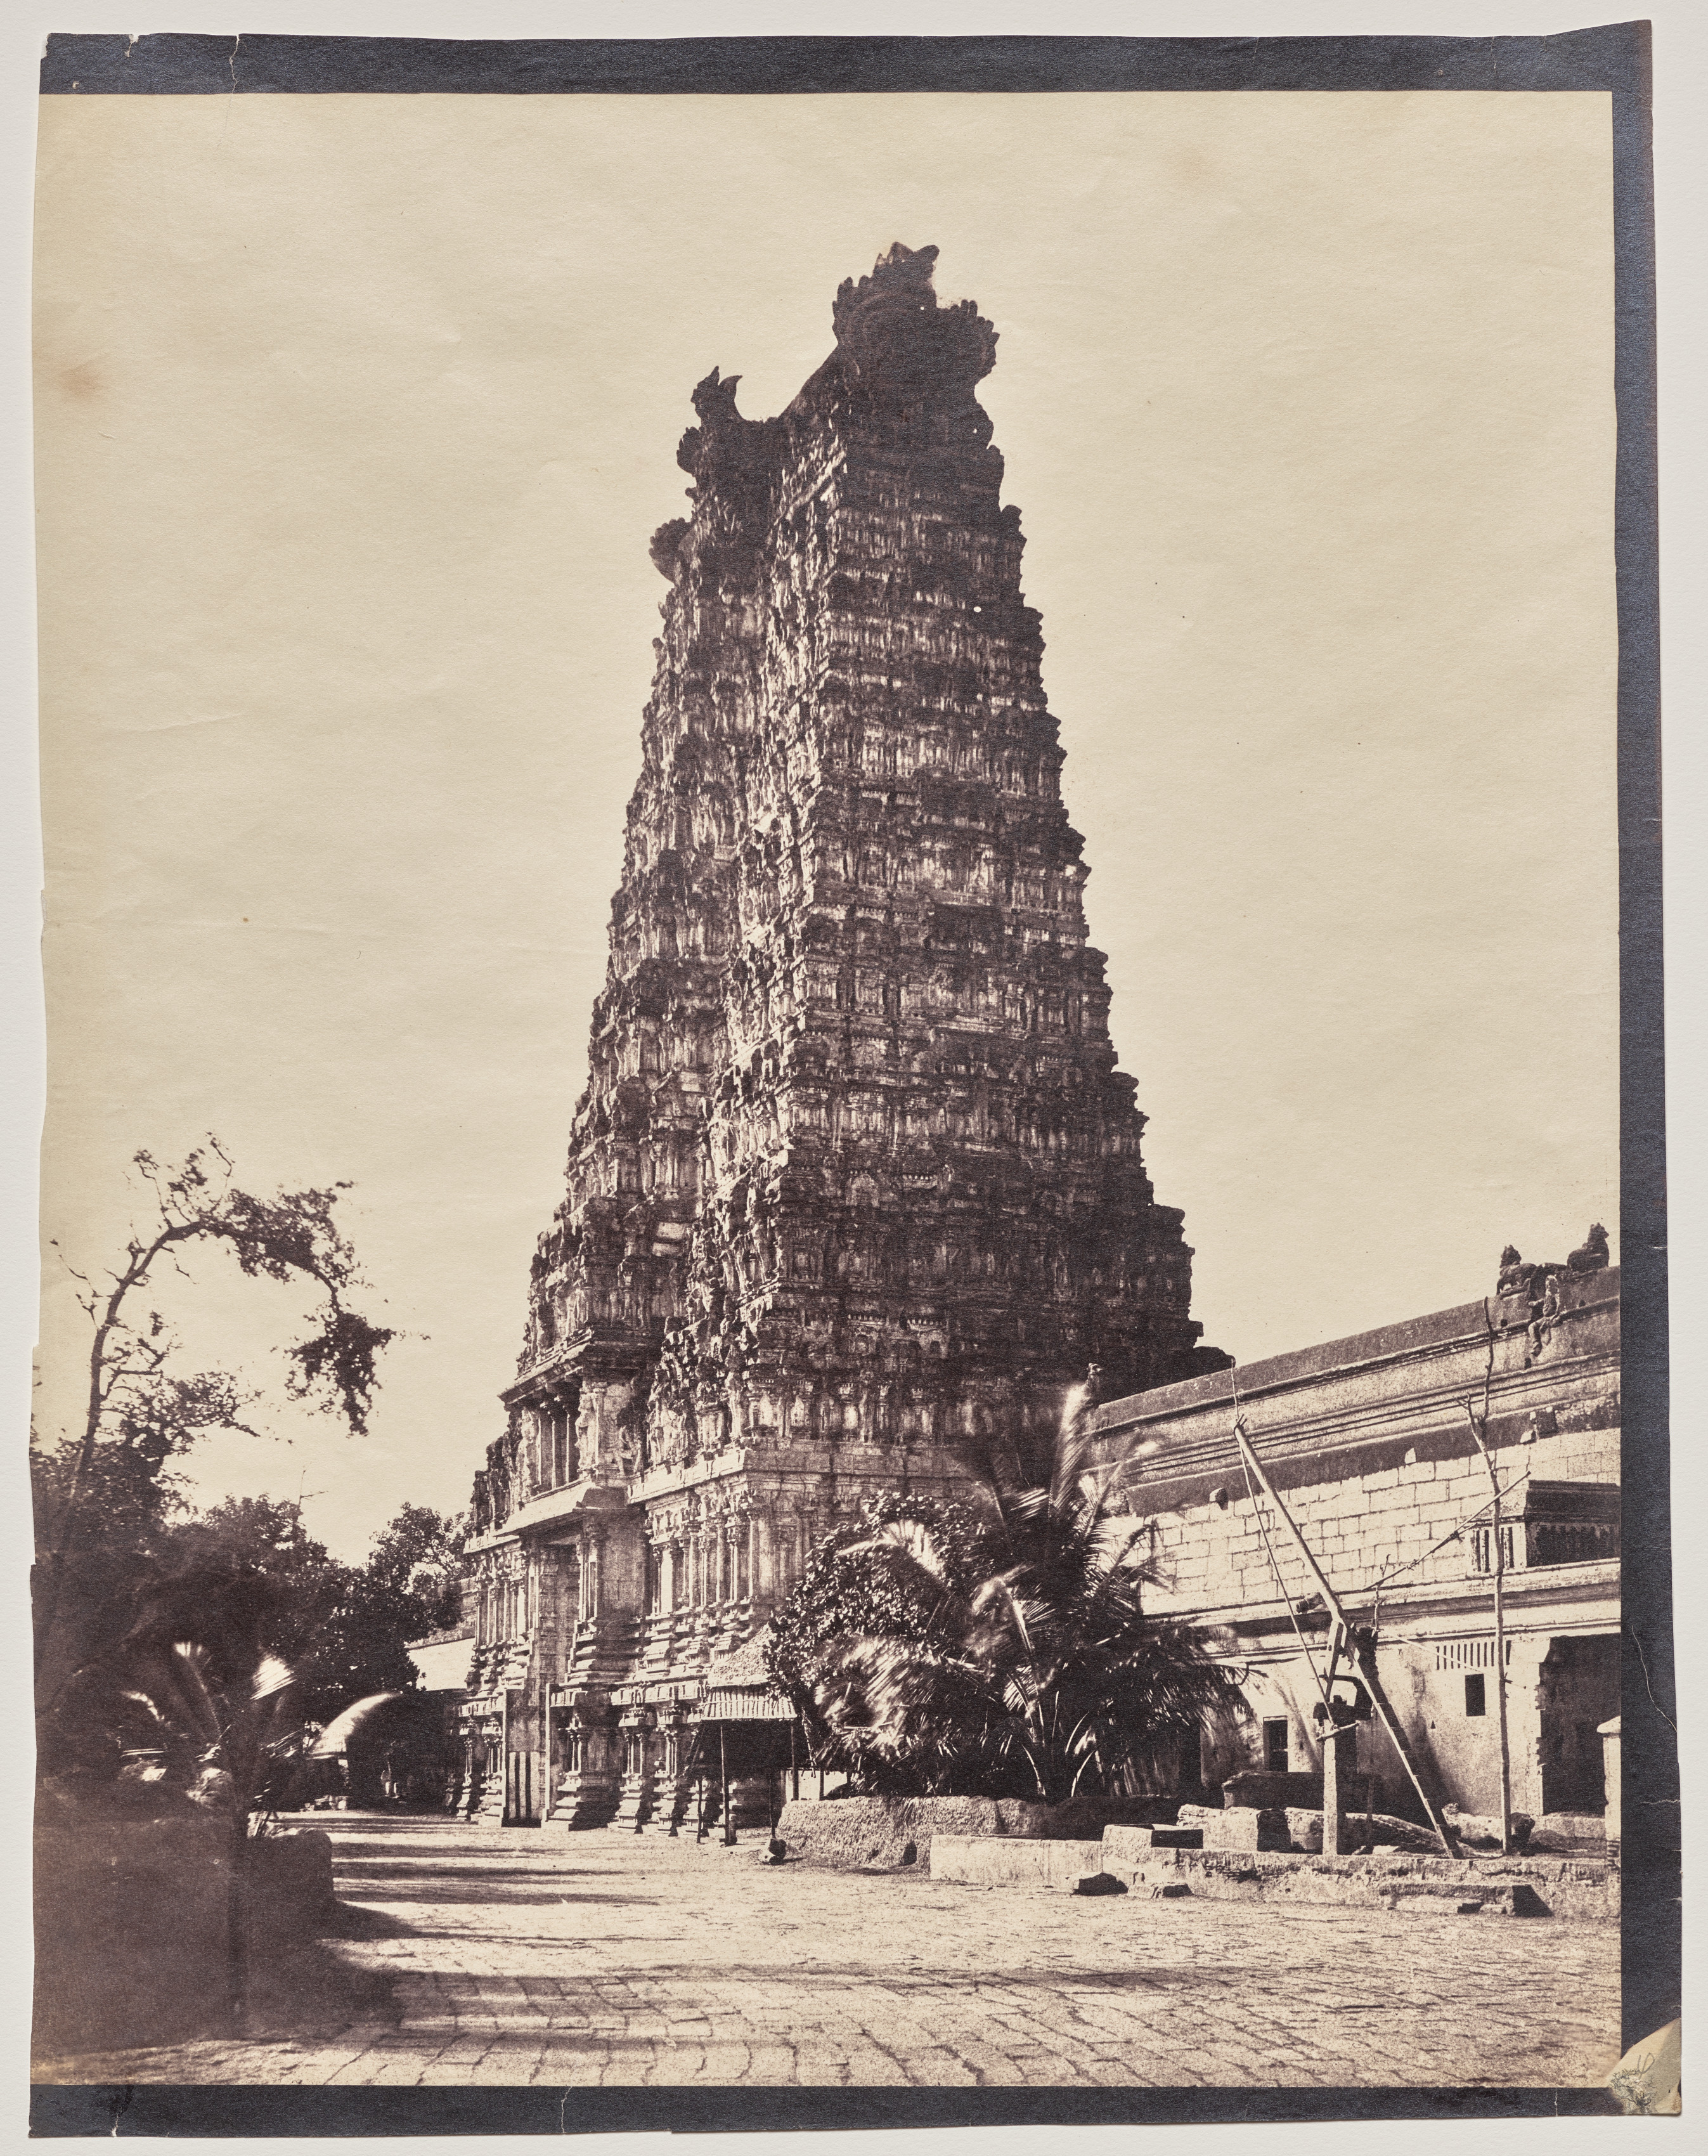 Western Gateway (Gopuram) of the Minakshi Sundareshvara Temple, Madurai